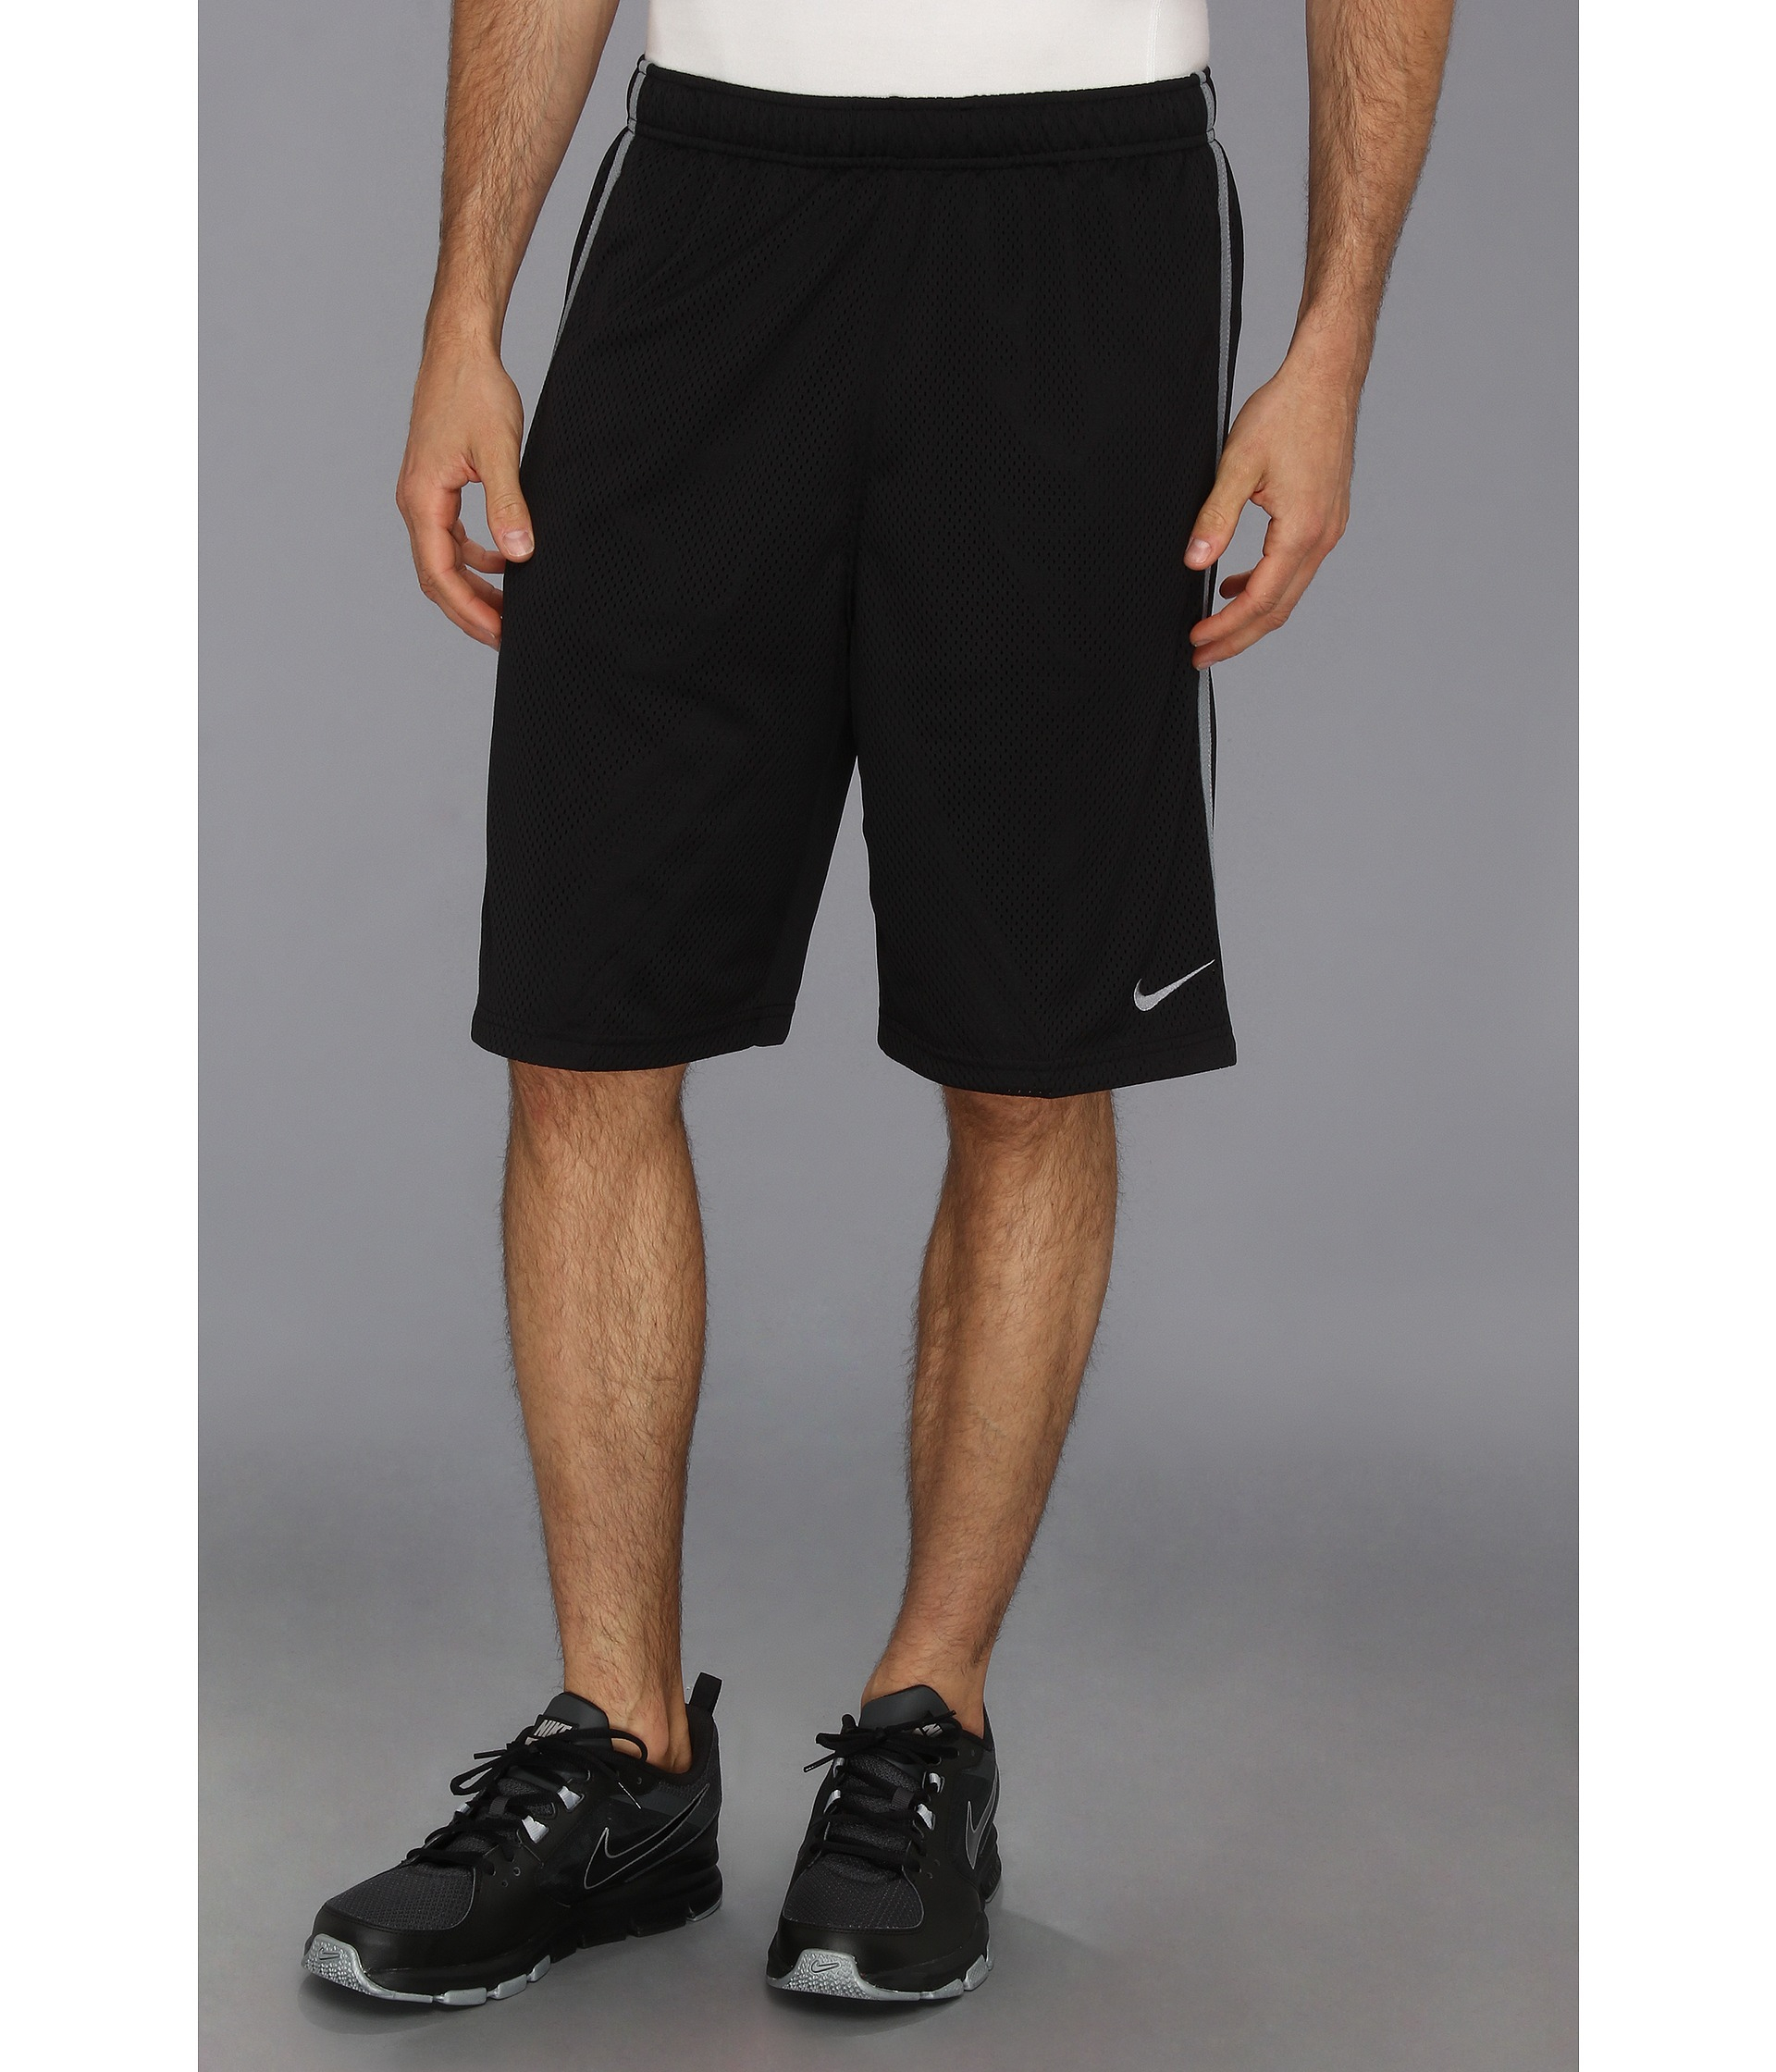 Lyst - Nike Monster Mesh Short in Black for Men